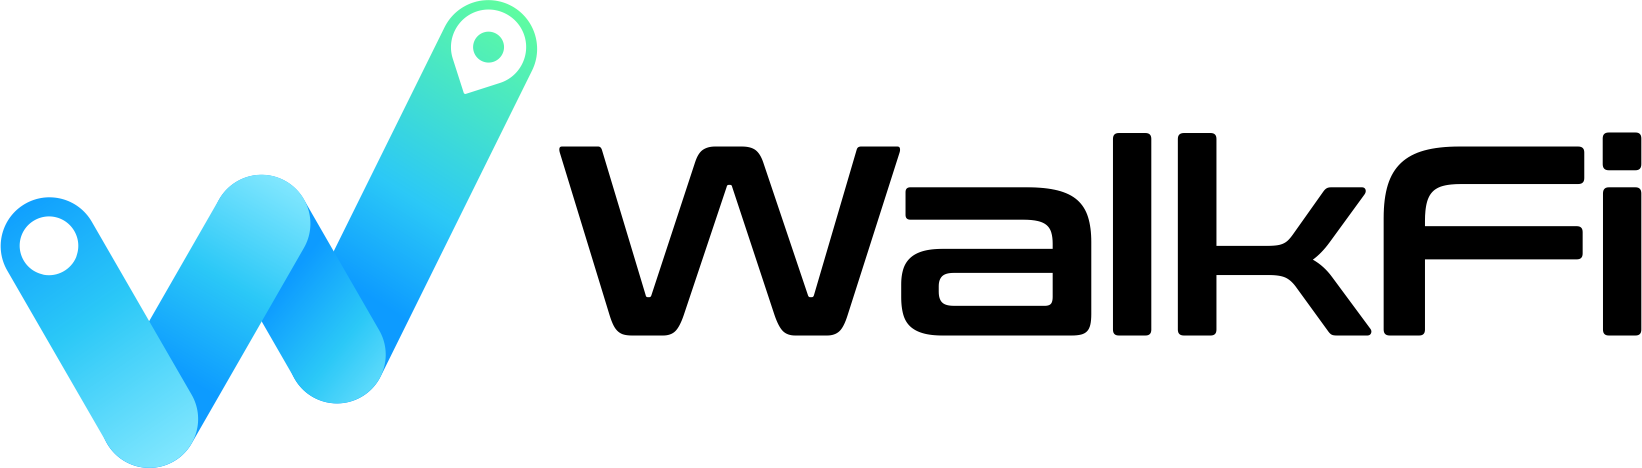 walkfi-logo